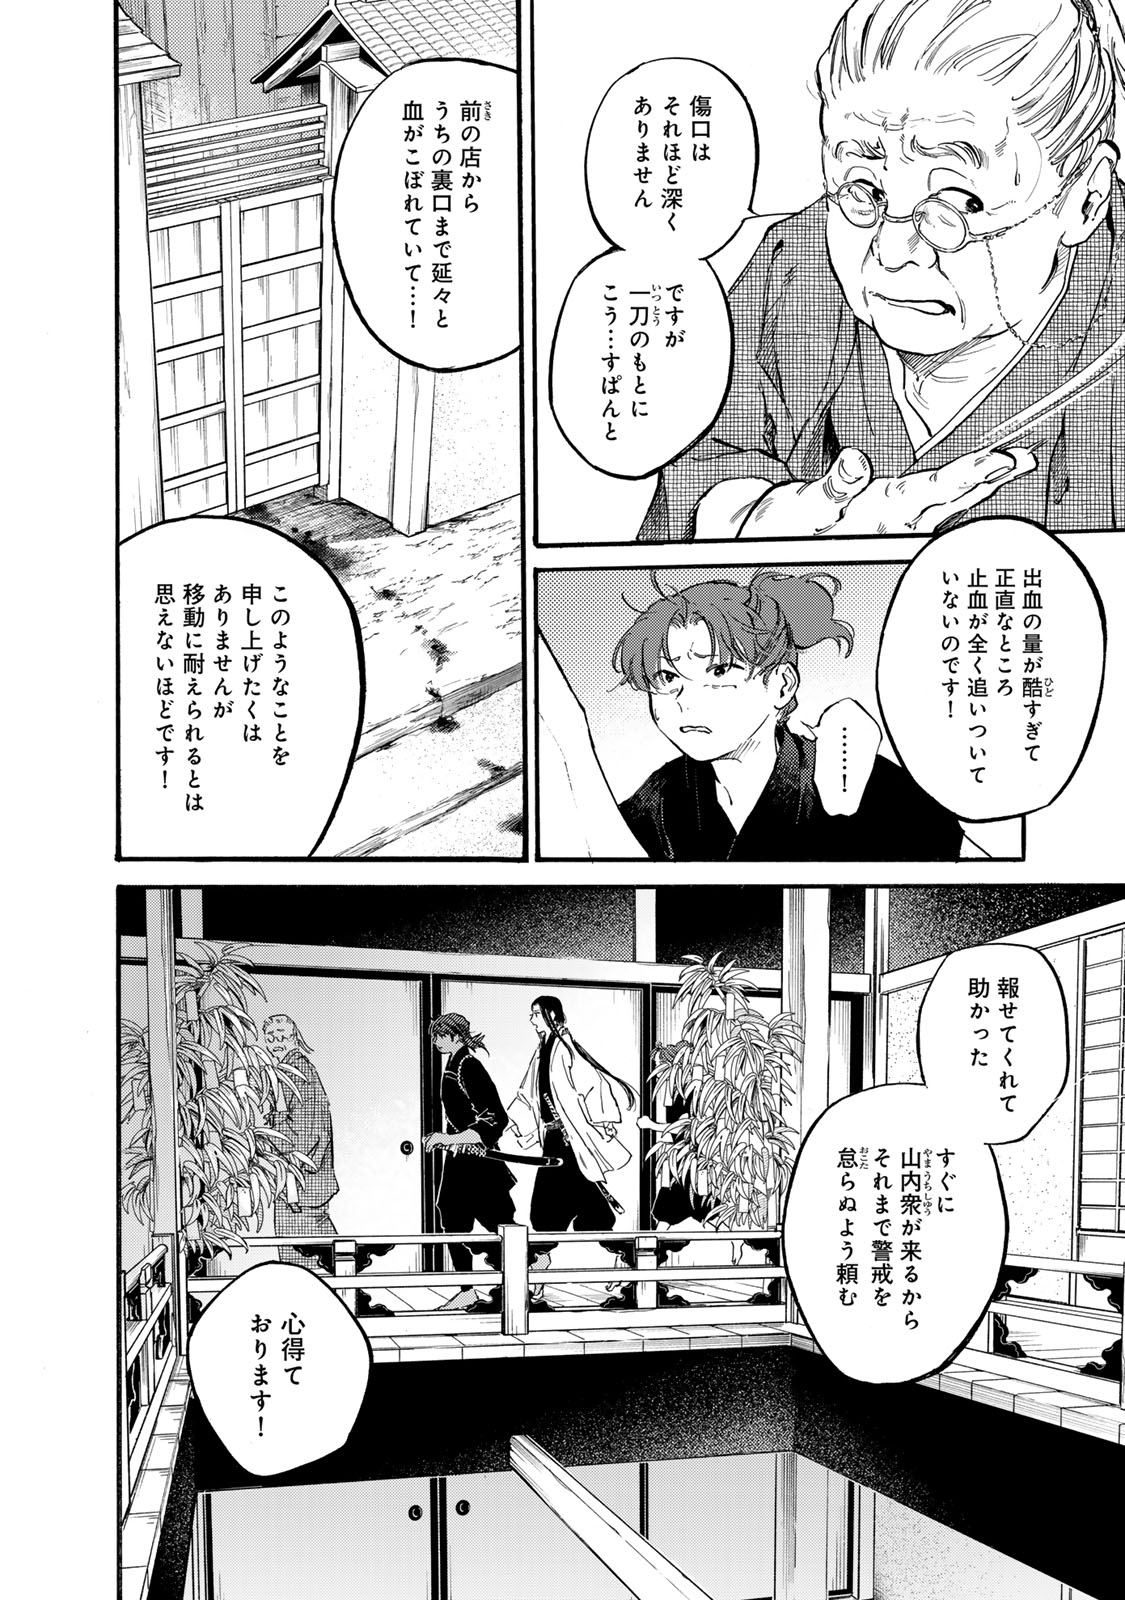 Karasu wa Aruji wo Erabanai - Chapter 40 - Page 4